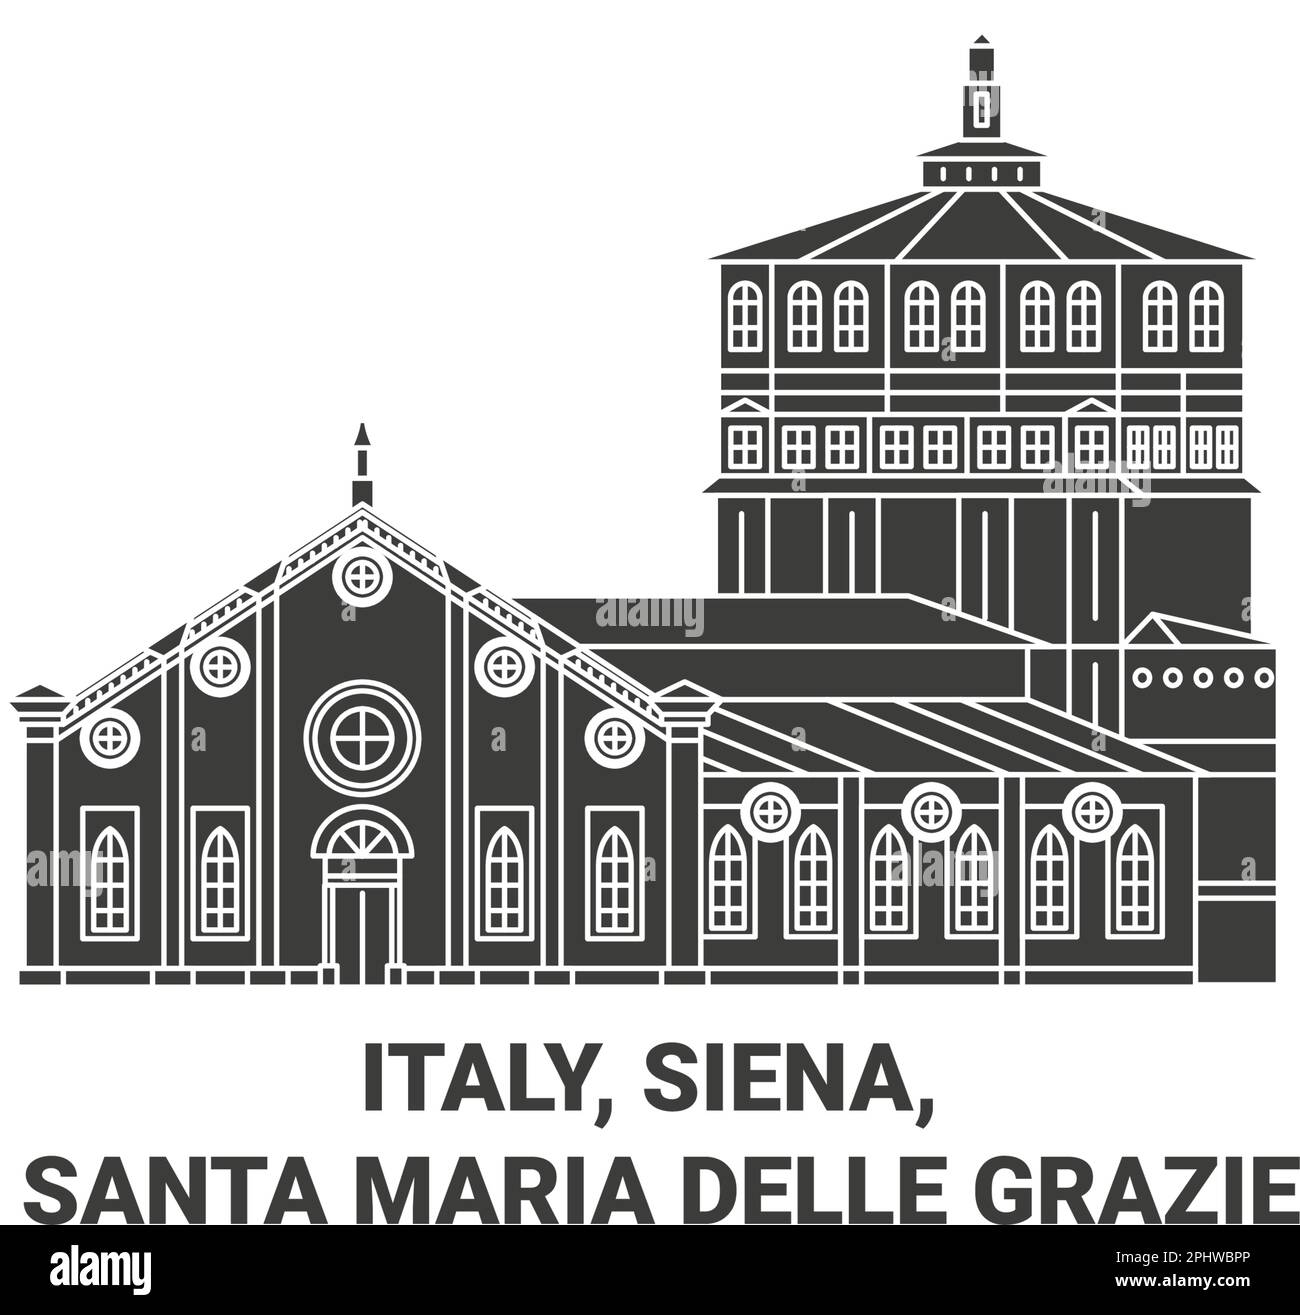 Italien, Siena, Santa Maria delle Grazie Reise-Wahrzeichen Vektordarstellung Stock Vektor